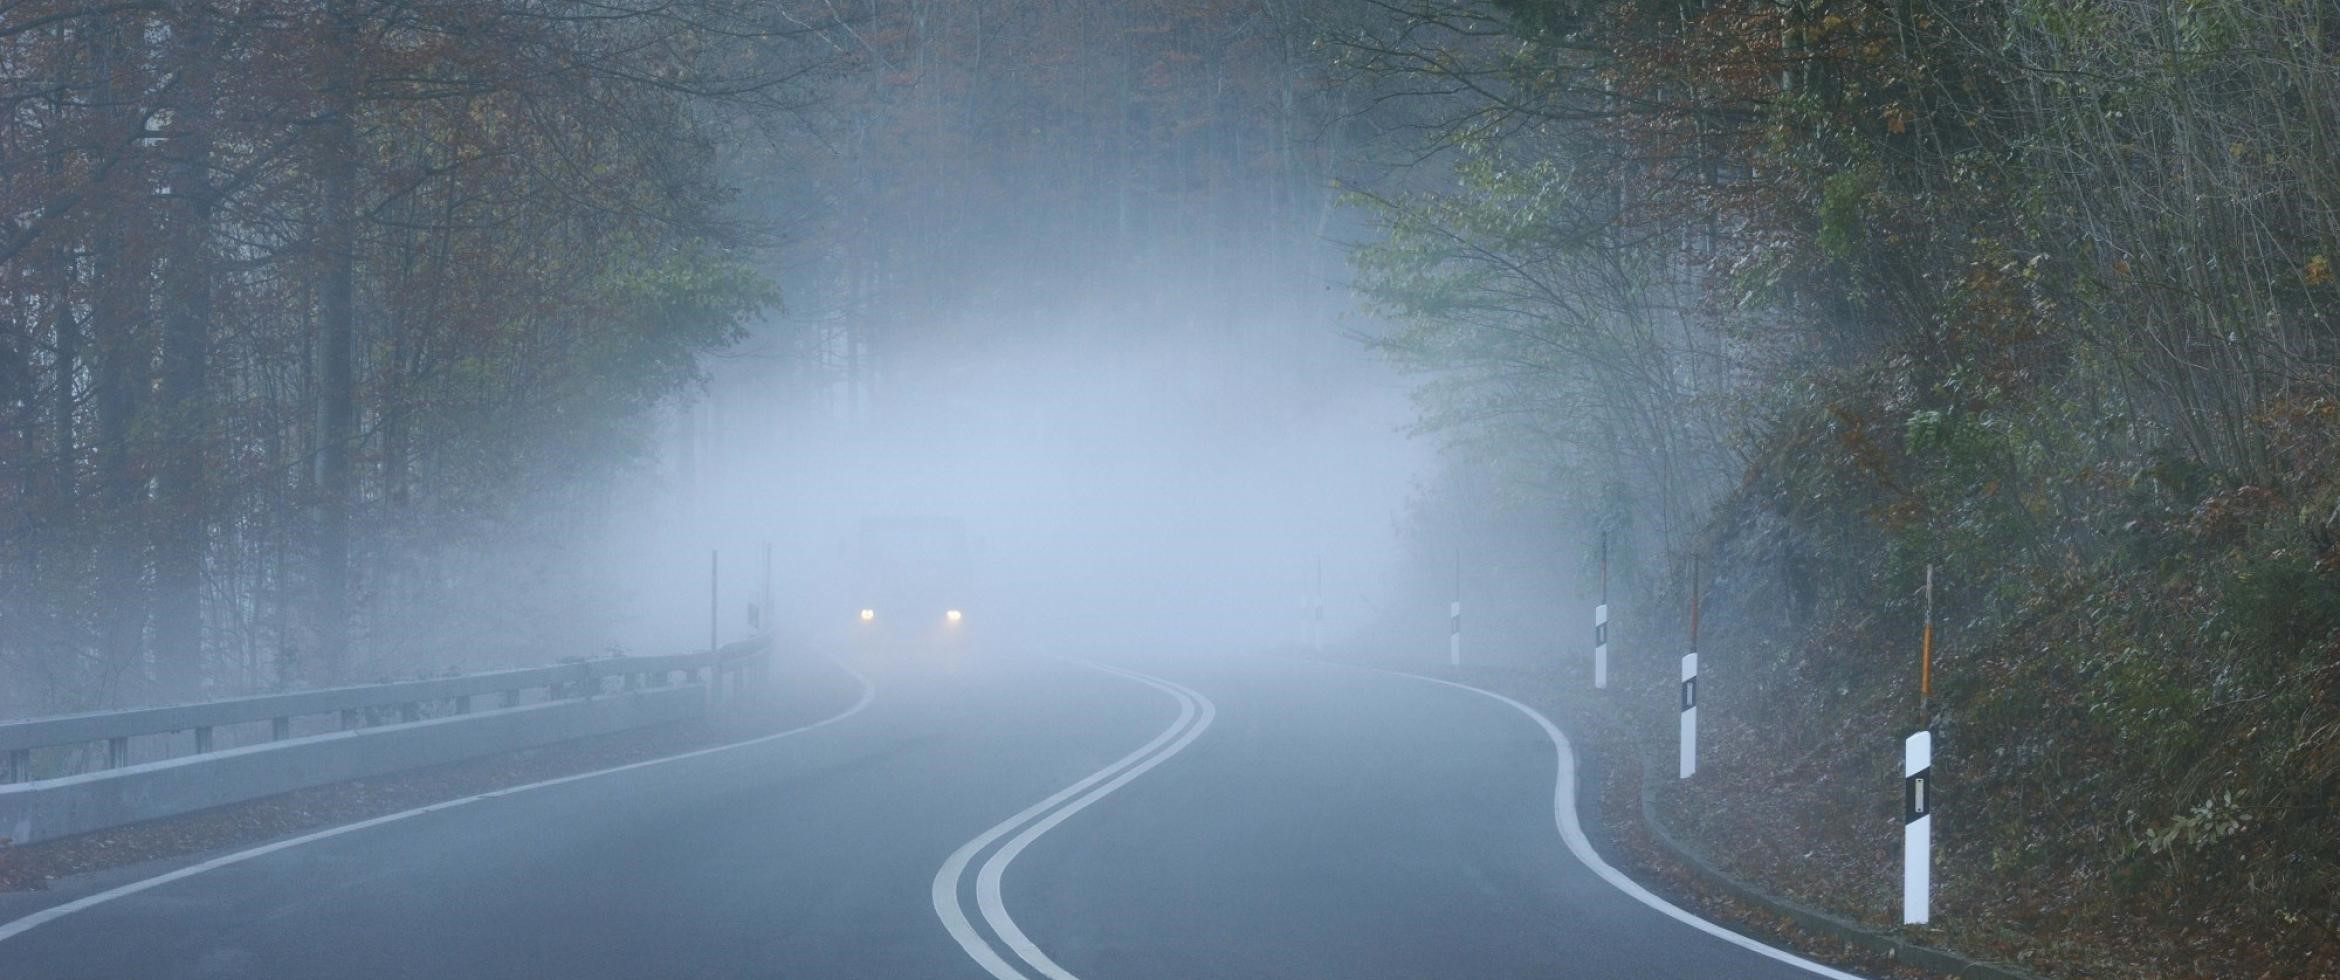 بررسي تاثير دمای رنگ نور در میزان نفوذپذير نور در هواي مه‌آلود